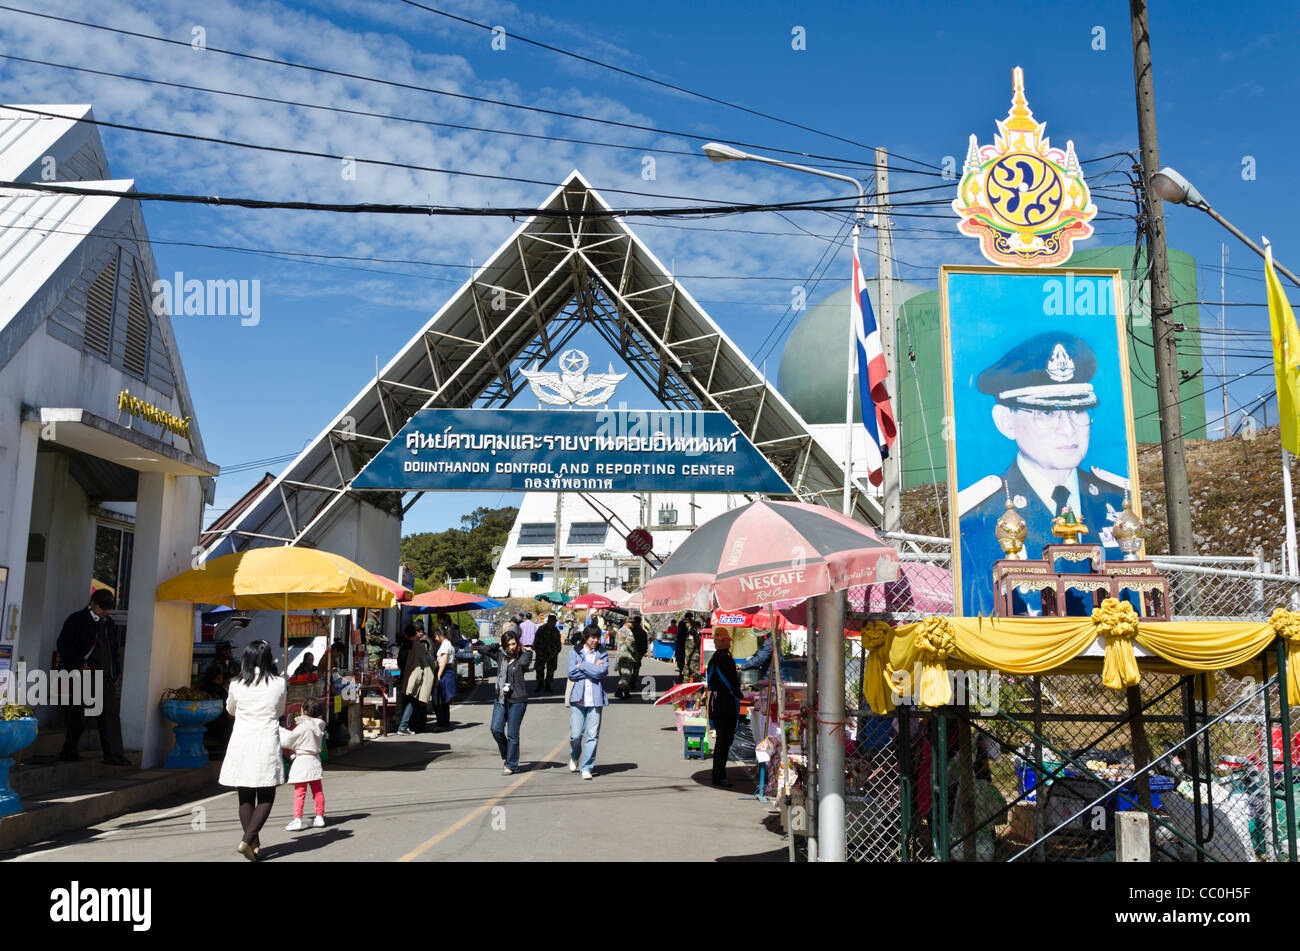 Entrée de Doi Inthanon Control & Reporting Center avec arch et la bannière de la Thai king. Banque D'Images